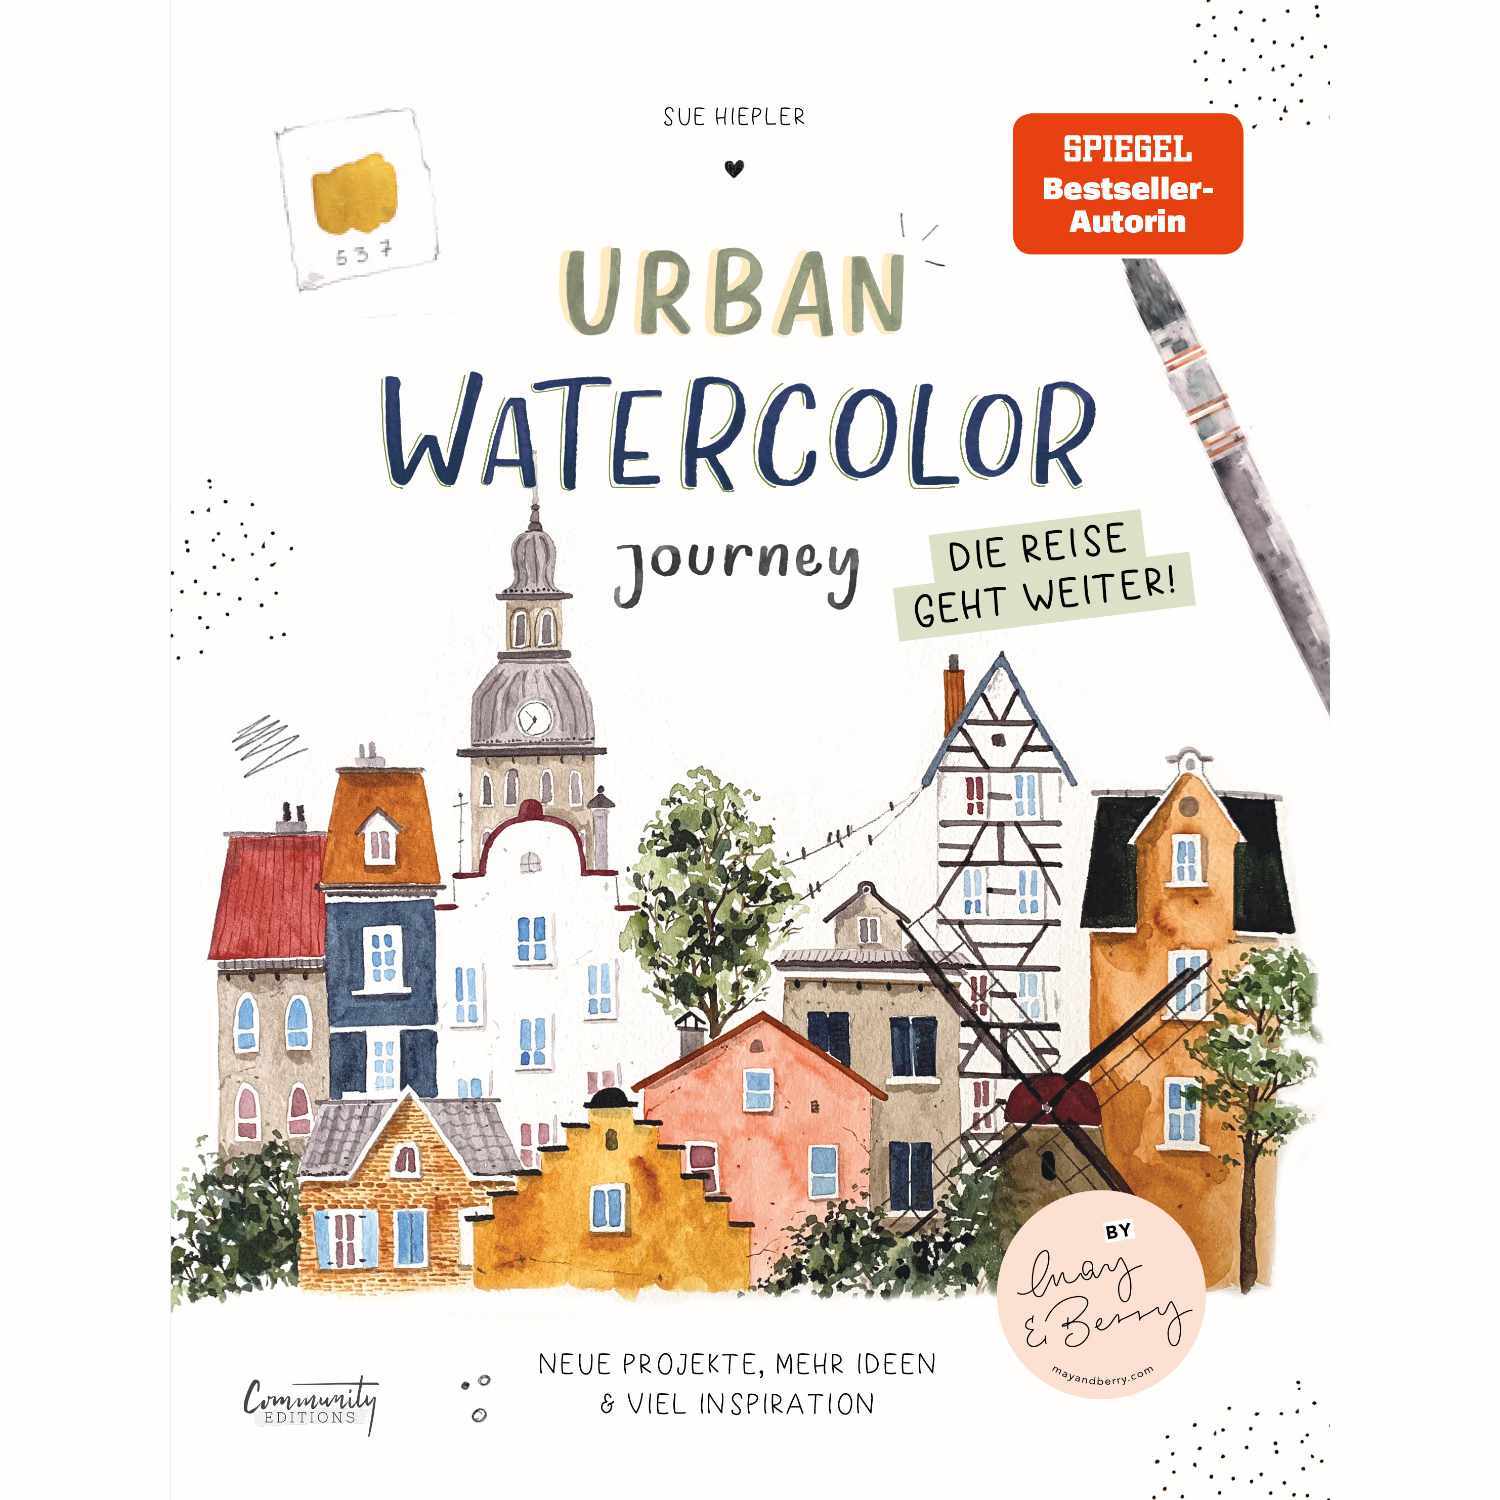 Urban Watercolor Journey - Die Reise geht weiter